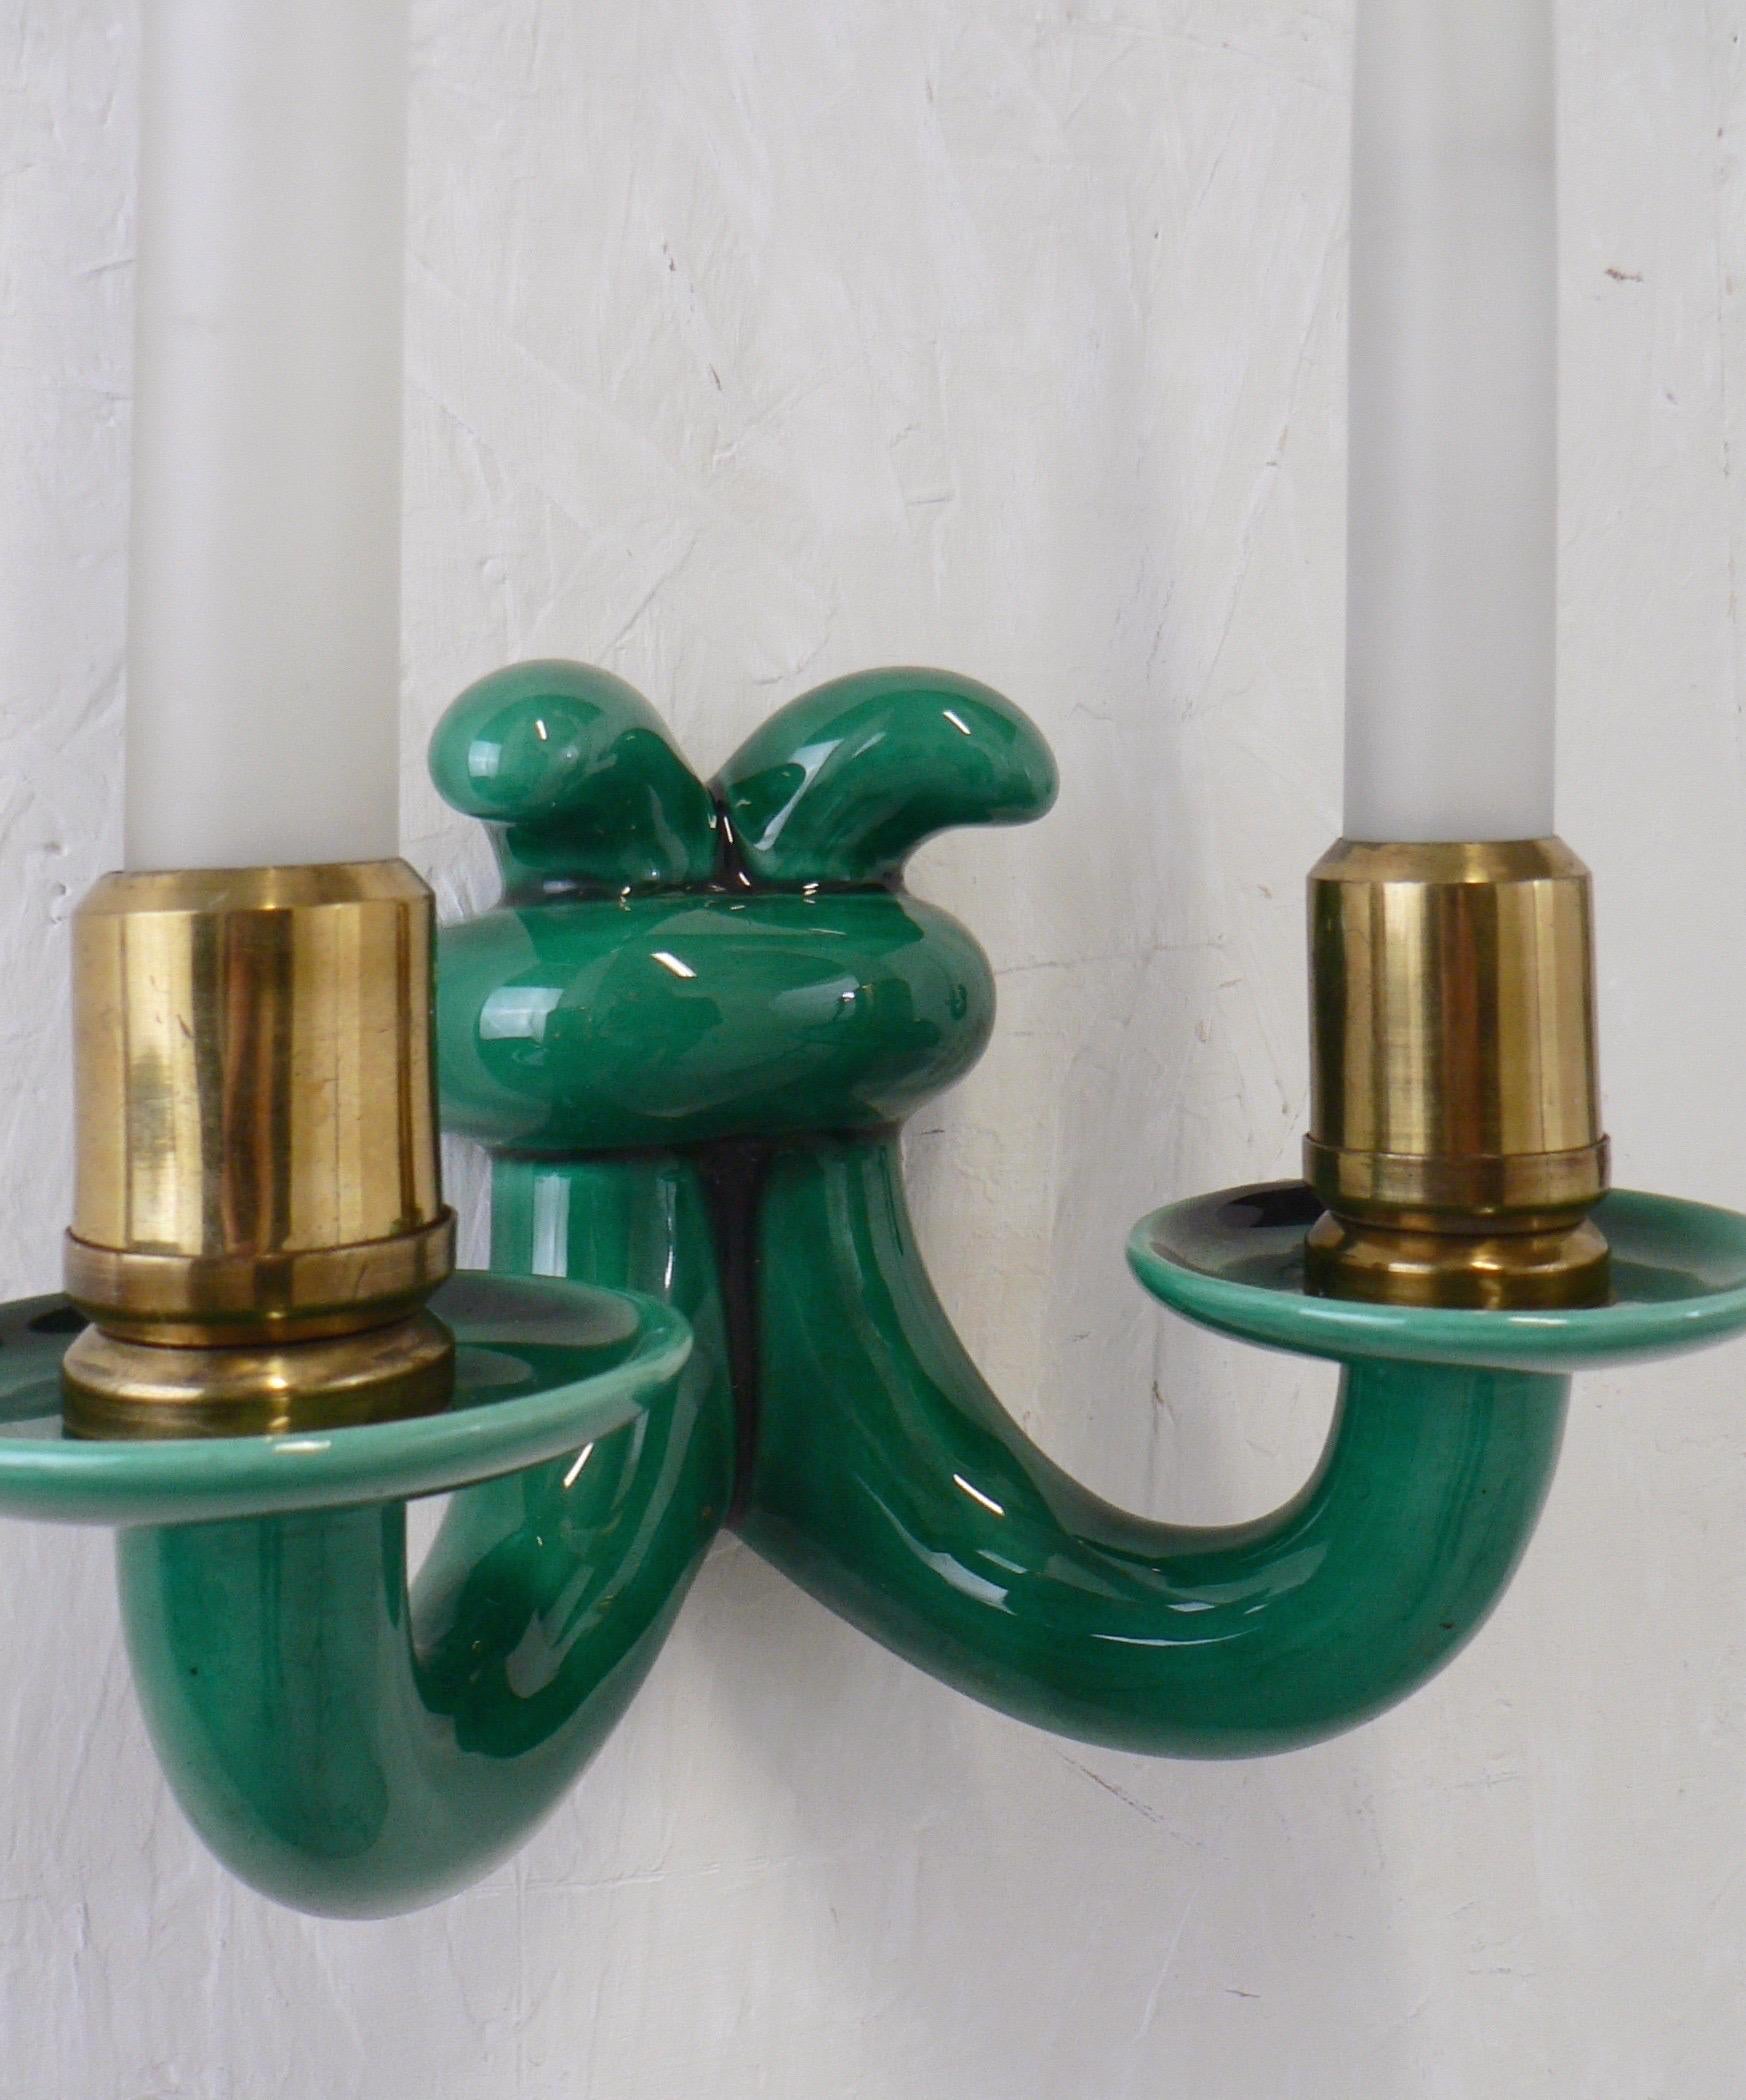 Ein Paar Wandlampen aus Sèvres-Porzellan von 1930 aus Frankreich mit grün emaillierter Keramik auf Messingsockeln. 
Glastulpen auf der Glühbirne.

US-Umverdrahtung auf Anfrage.